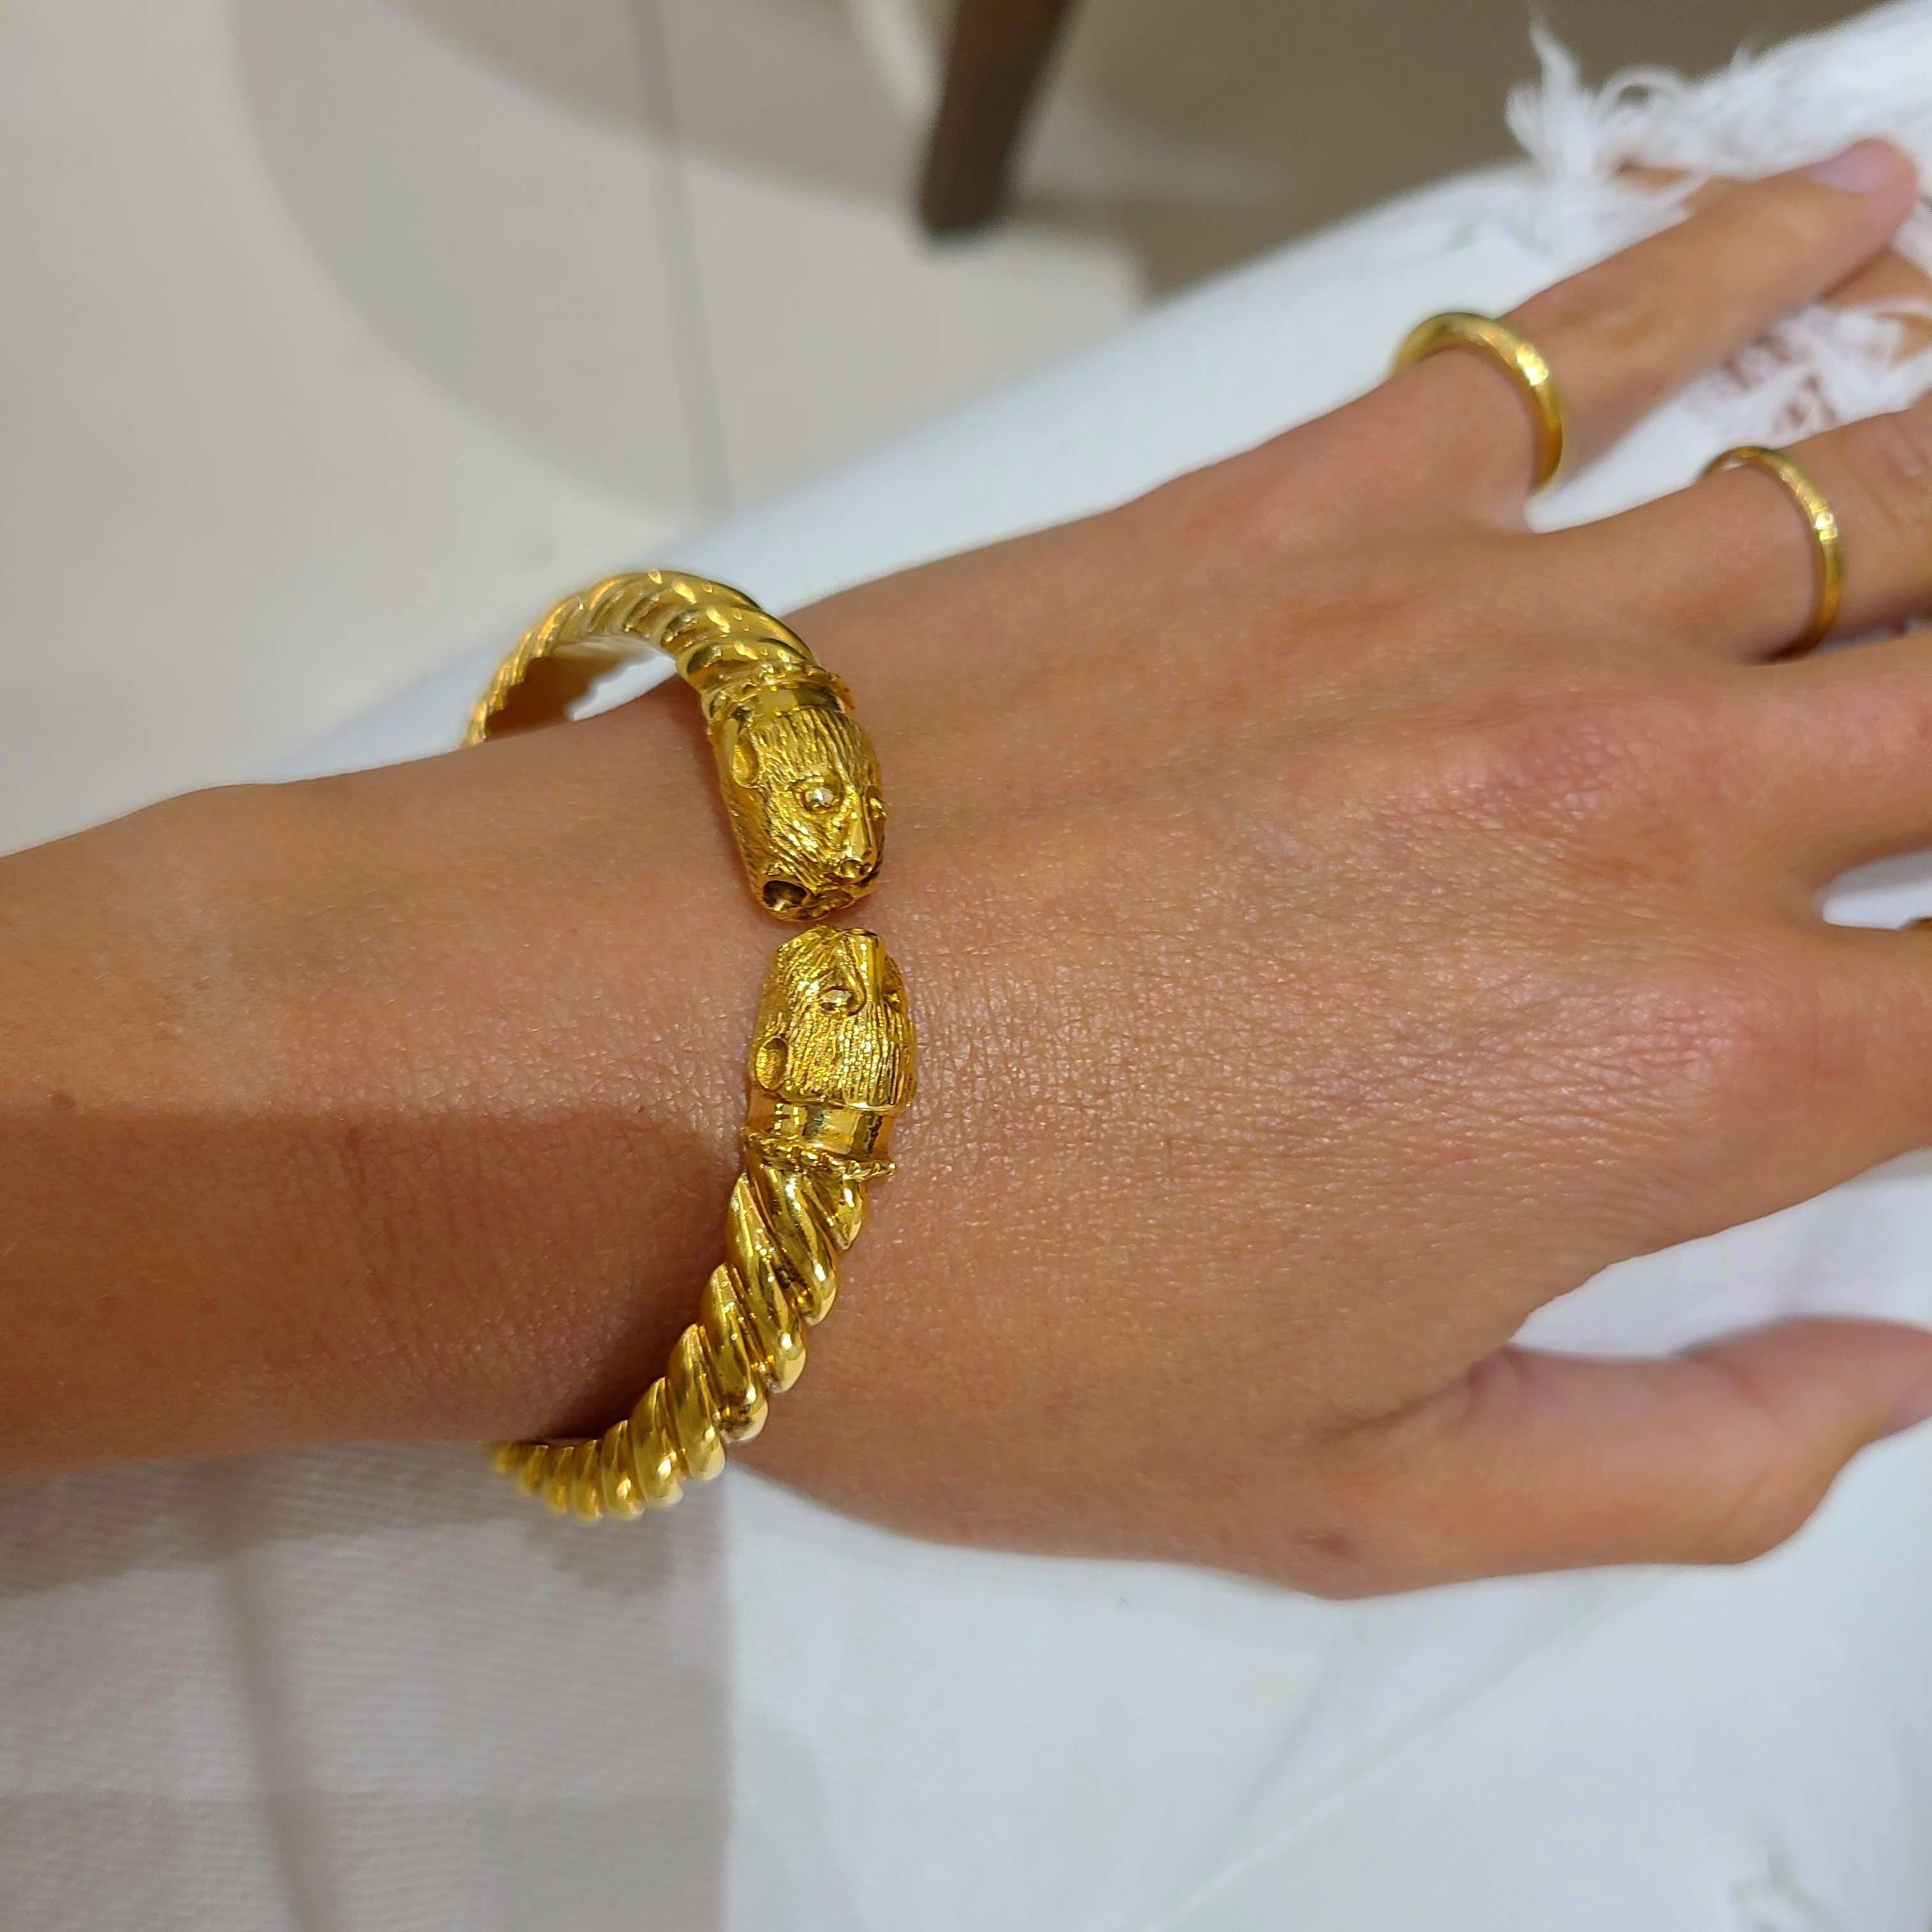 Zolotas 24 Karat und 18 Karat Gelbgold Twin Chimera Kopf-Armreif Armband für Damen oder Herren im Angebot